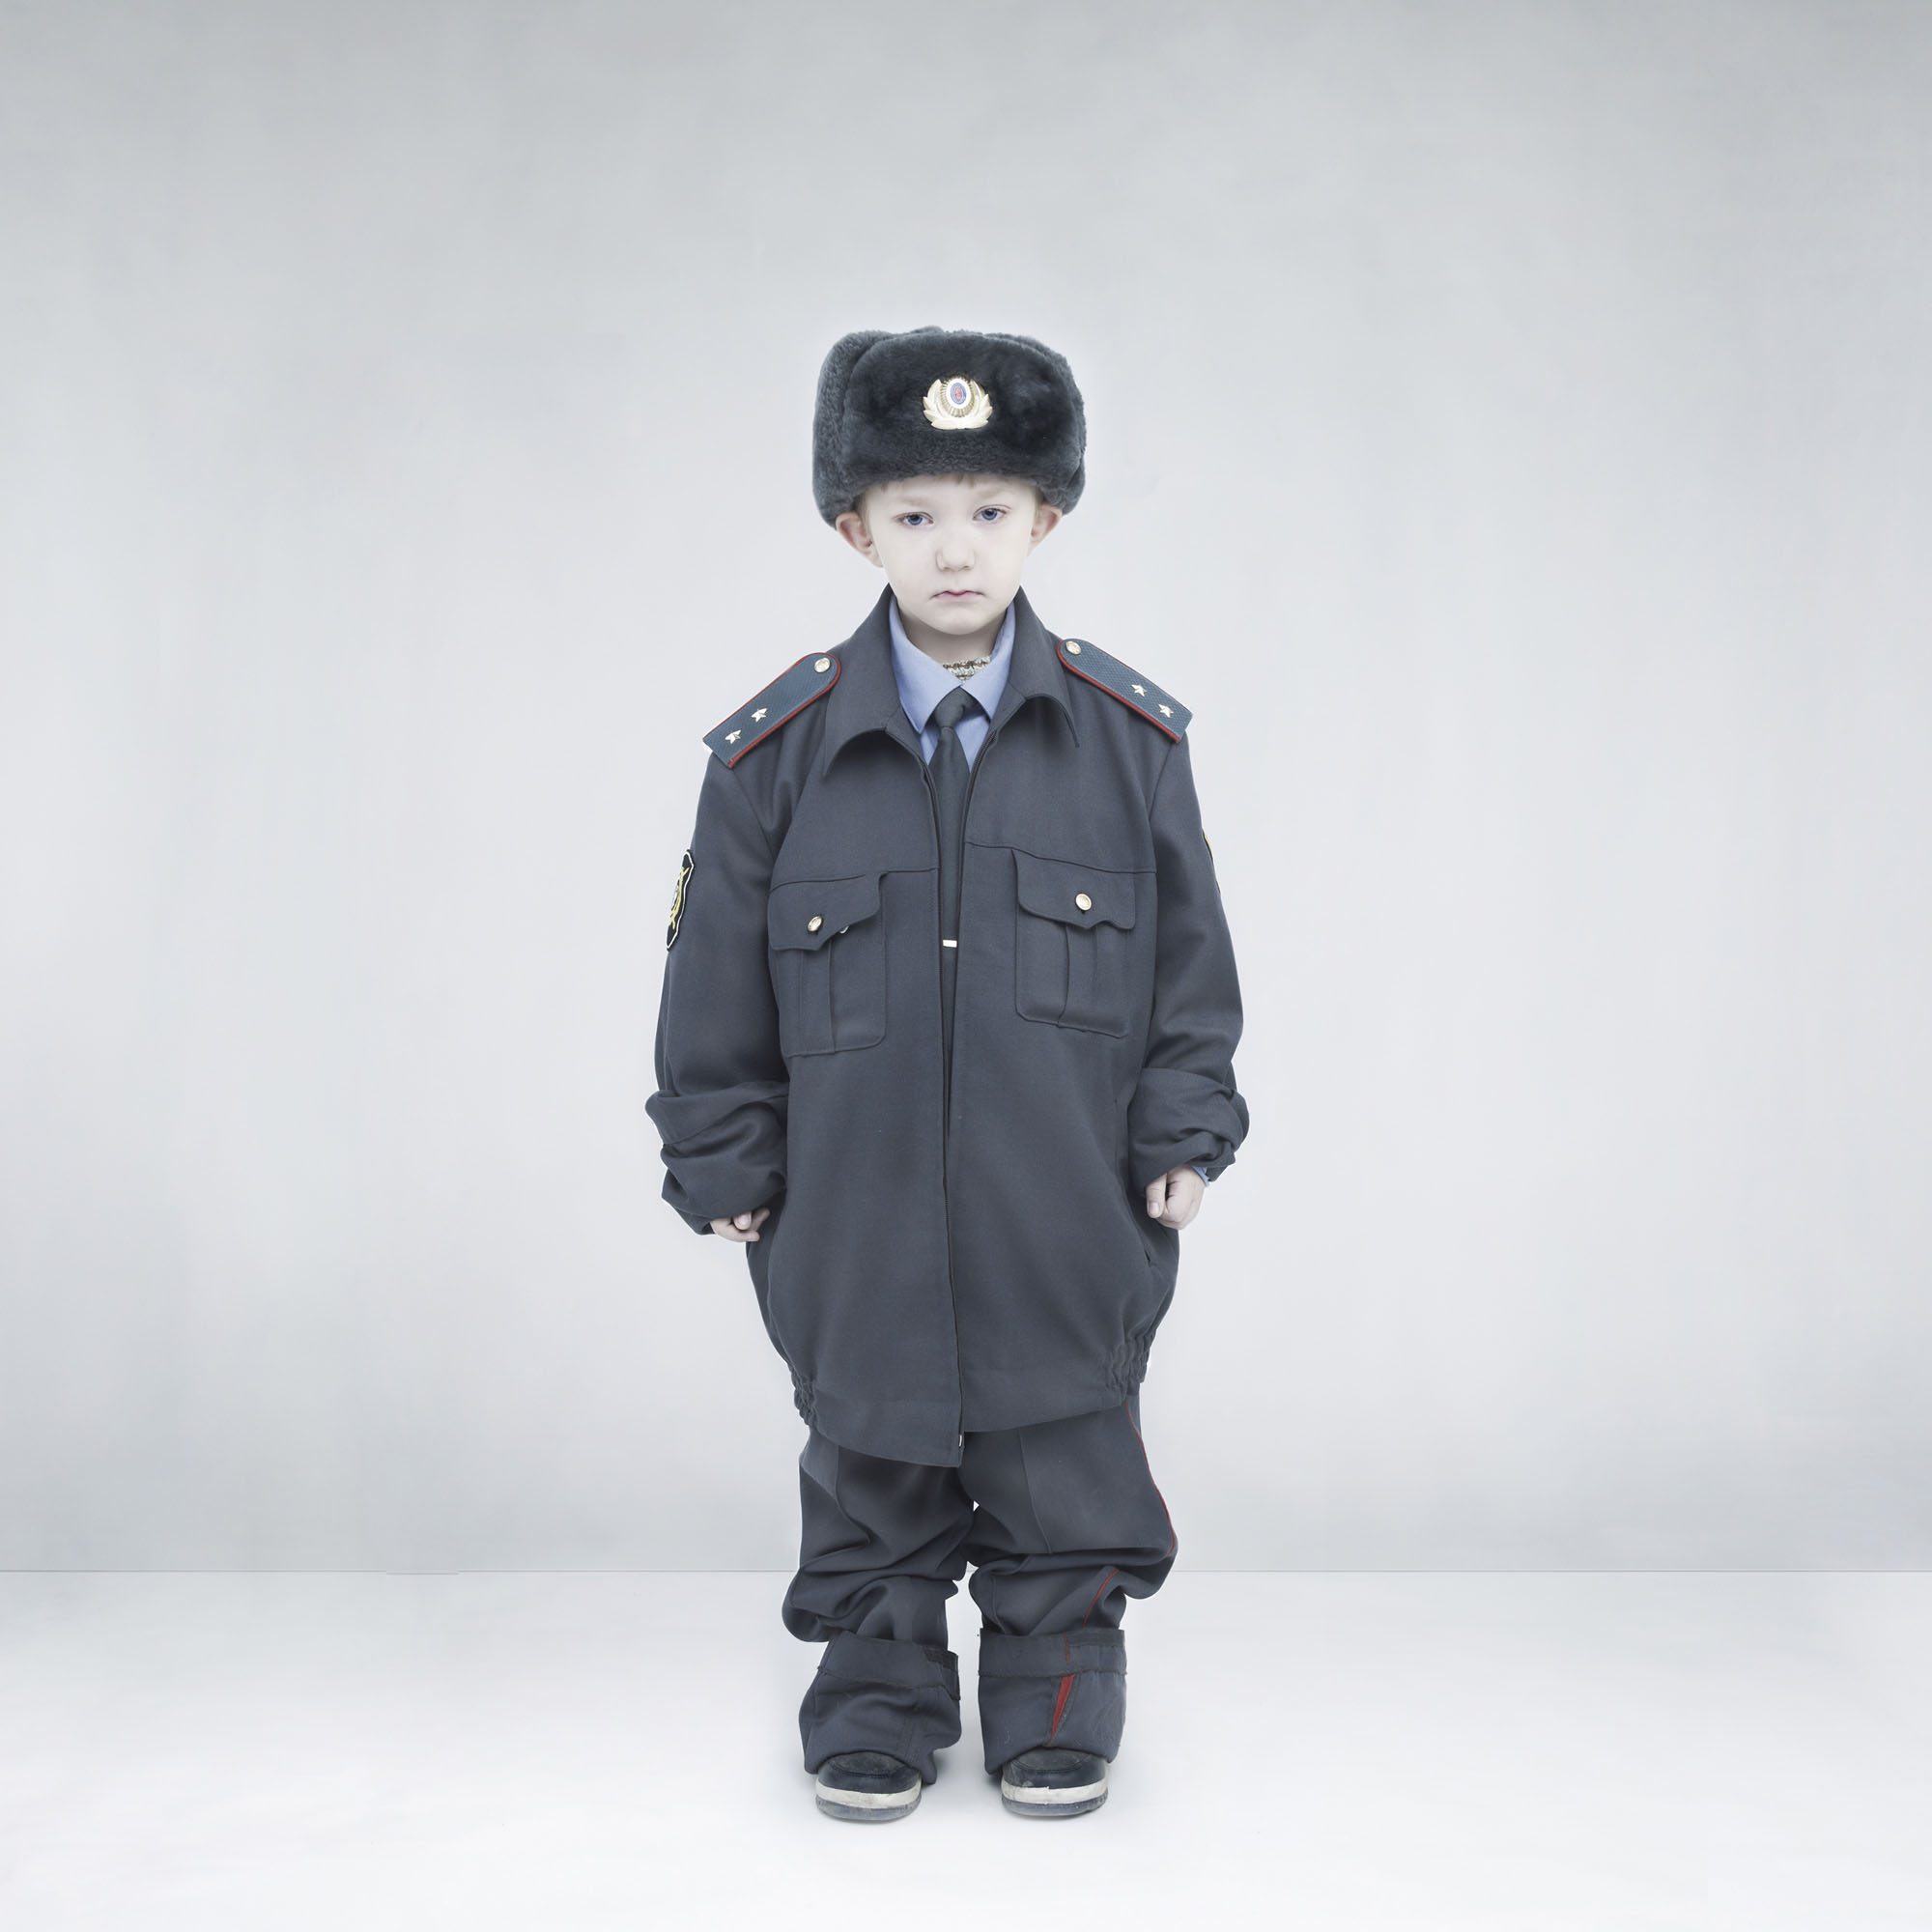 Ребенок в форме милиционер